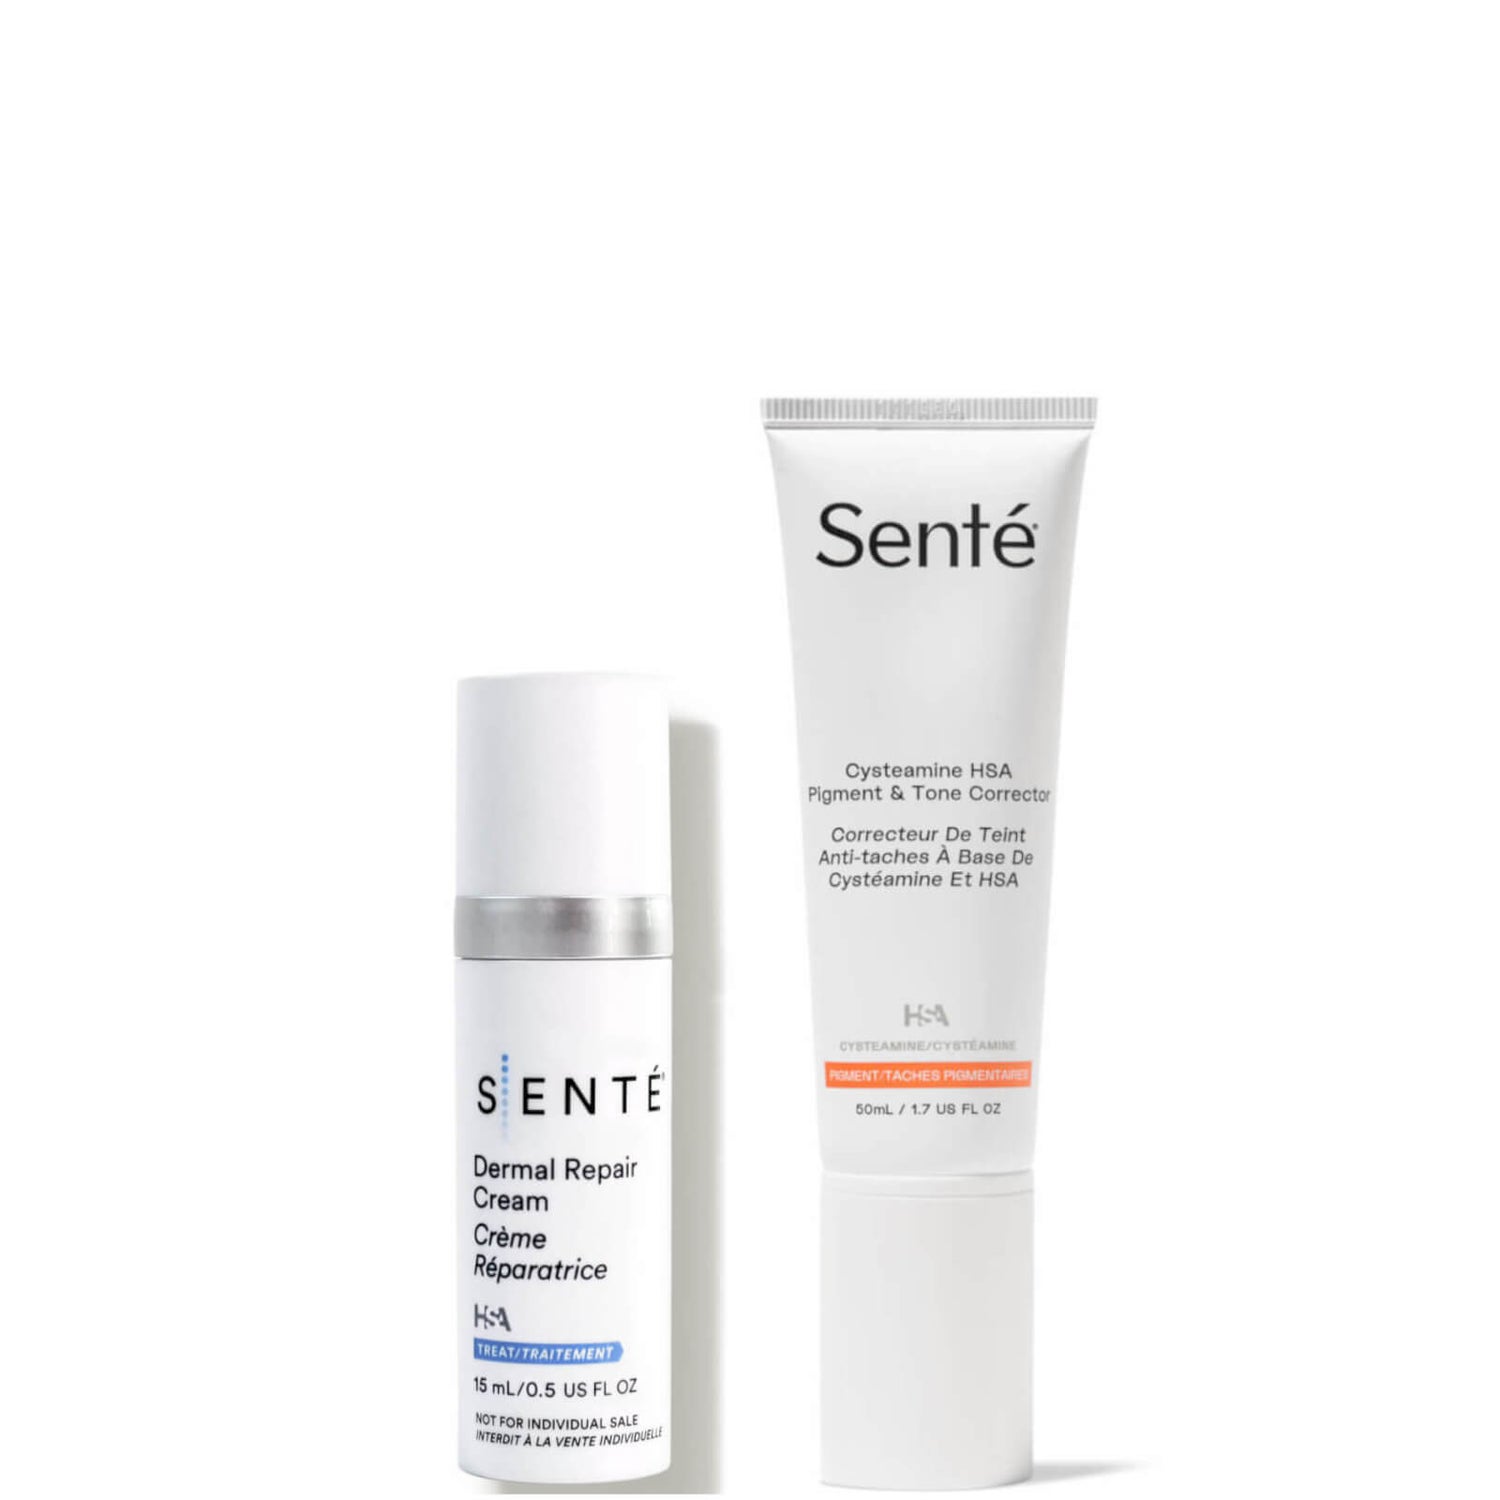 SENTÉ Cysteamine HSA and Dermal Repair Cream Duo (Worth $198.00)